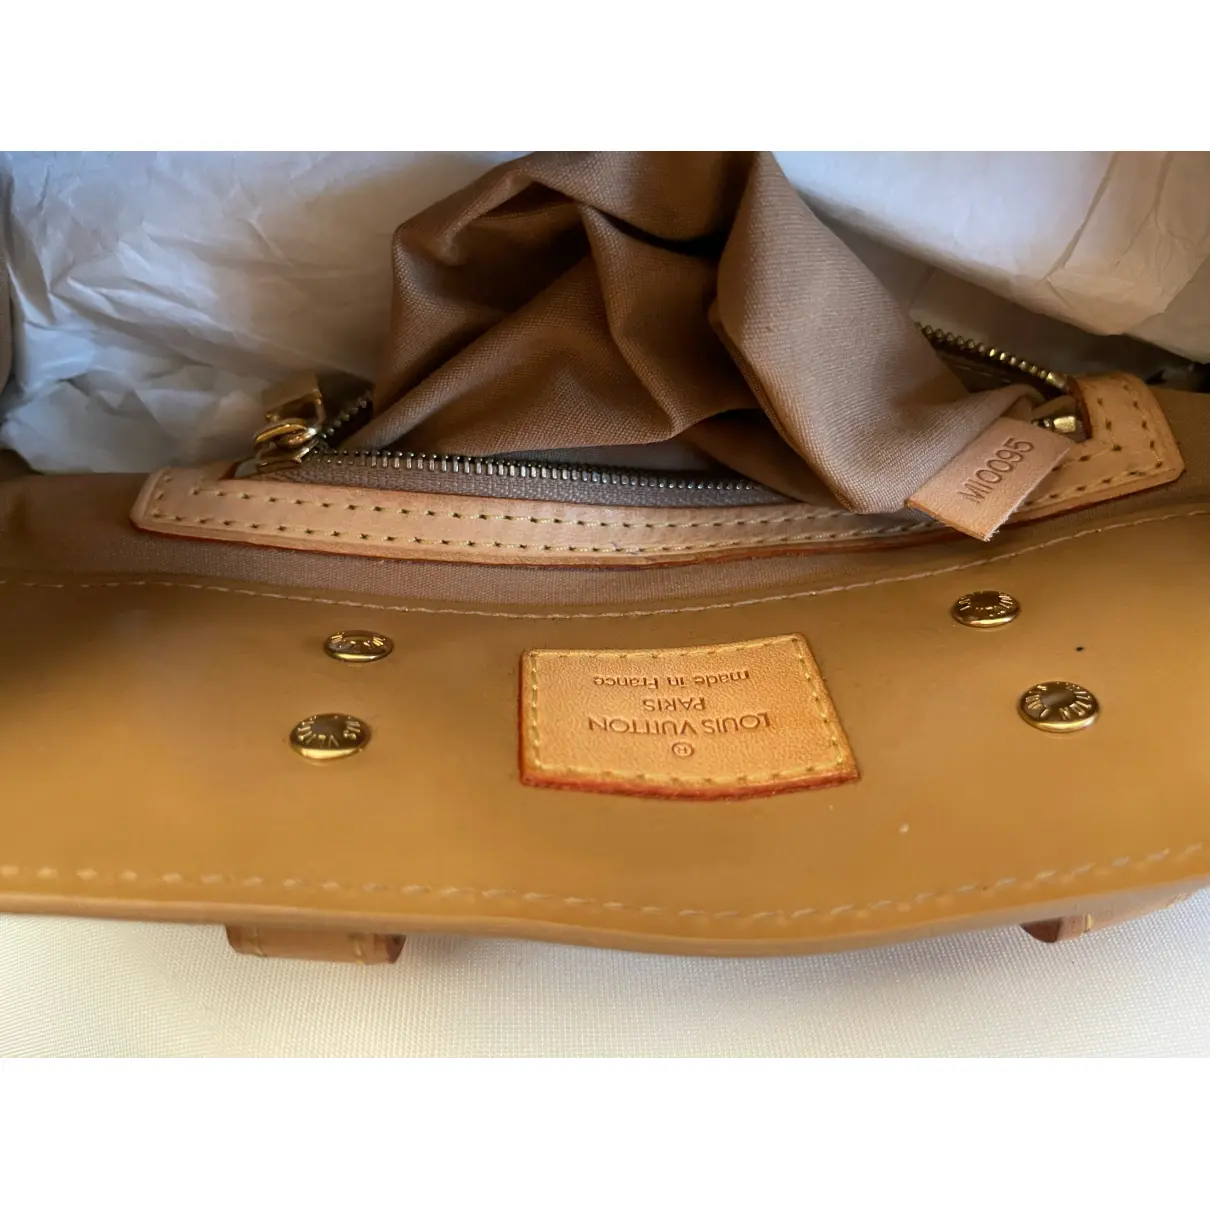 Reade cloth handbag Louis Vuitton